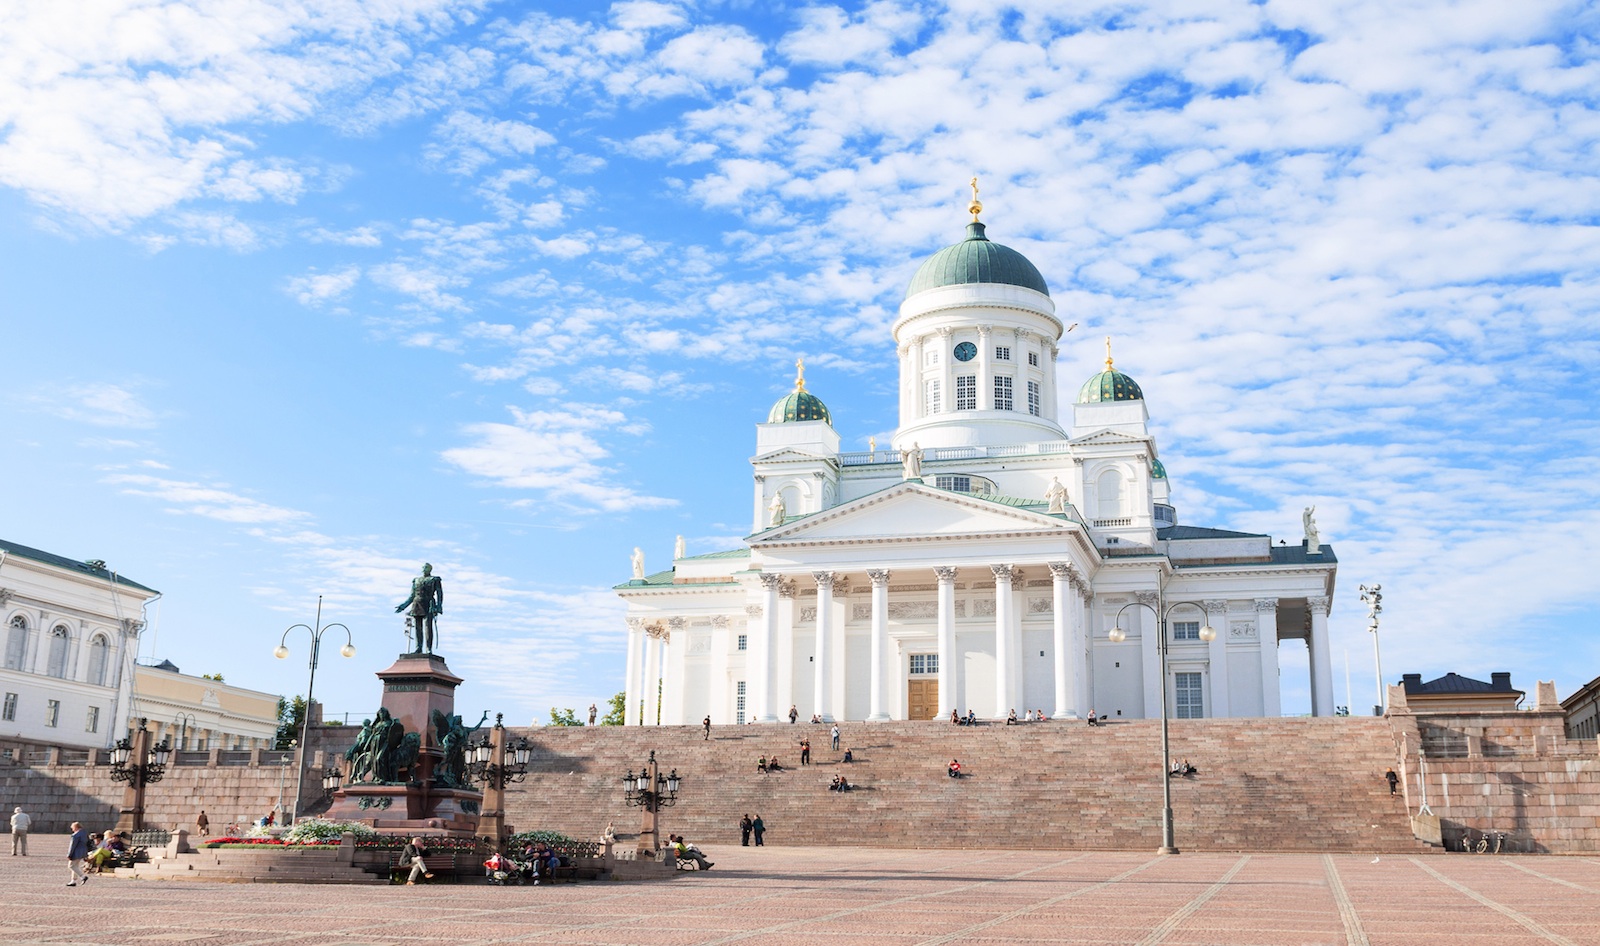 تور فنلاند با پرواز مستقیم و اقامت 6 روزه در بهترین هتل های کشور فنلاند